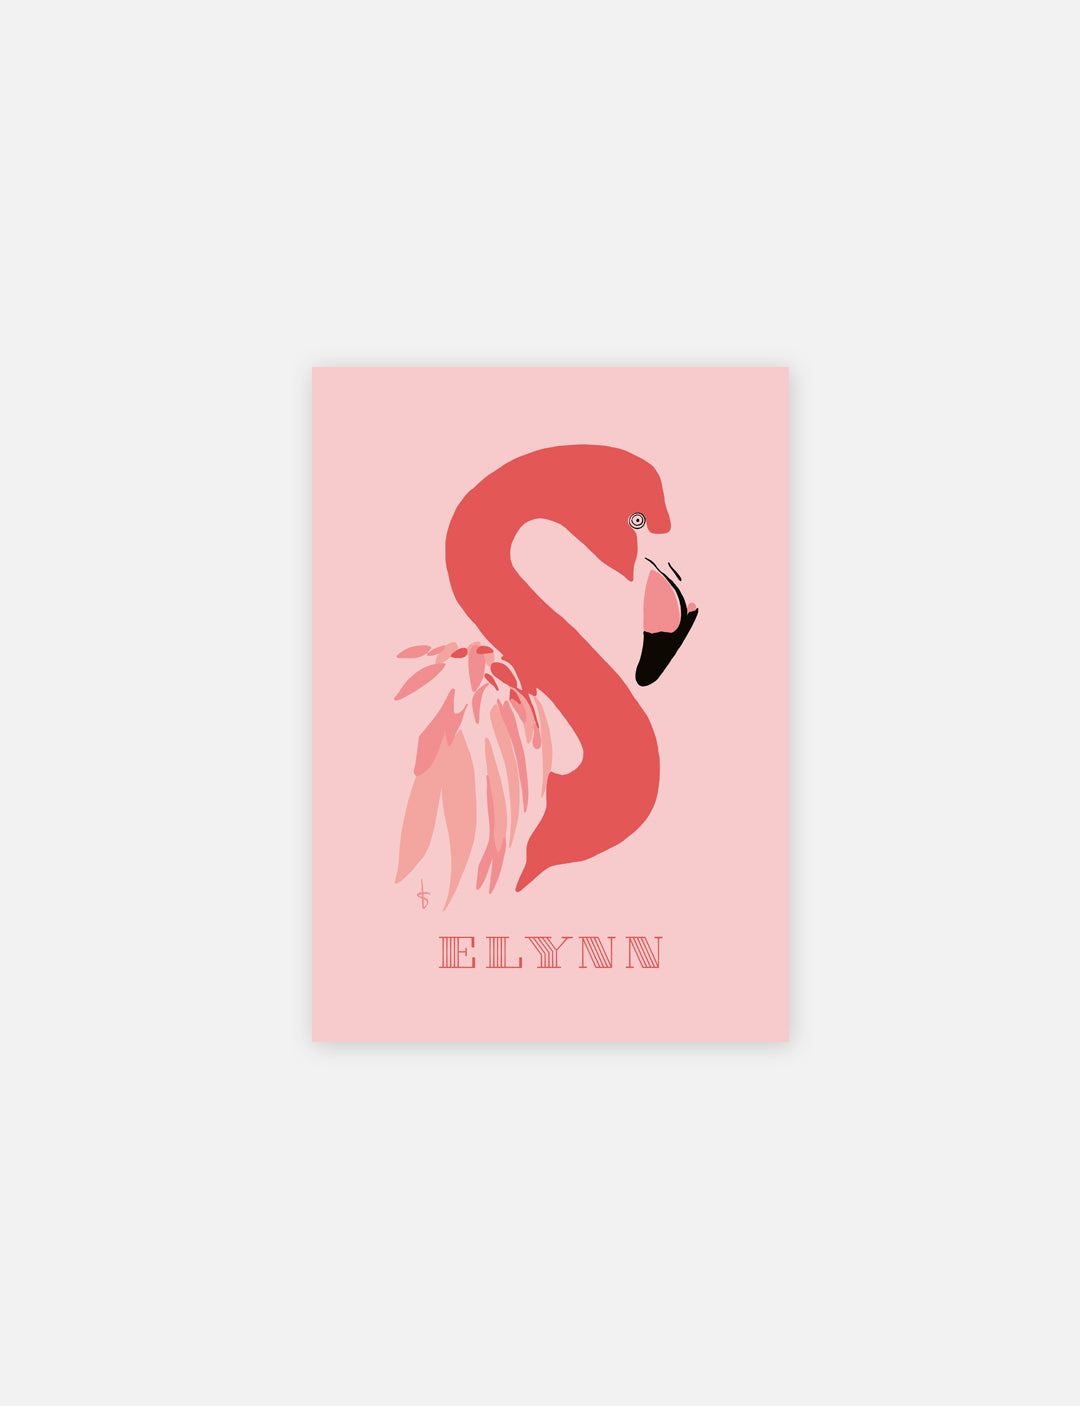 Verras iemand met zijn of haar naam op deze flamingo poster! Gepersonaliseerde poster met handgetekende flamingo illustratie en toevoeging van een naam. Leuk om cadeau te geven of te kopen als poster kinderkamer.